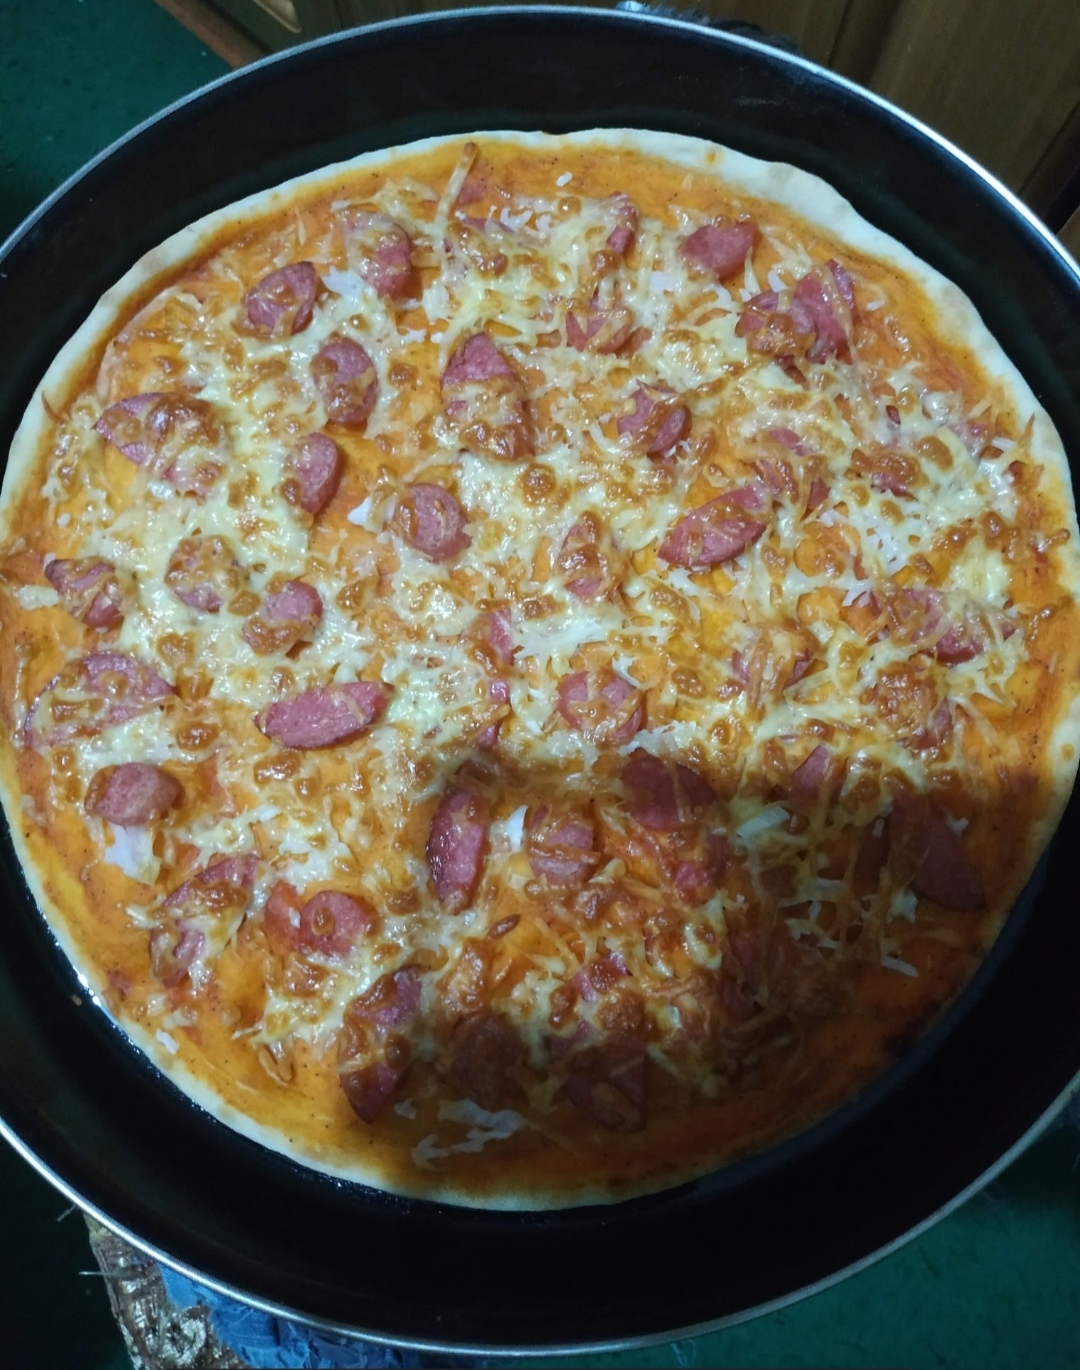 Тонкая итальянская пицца с салями